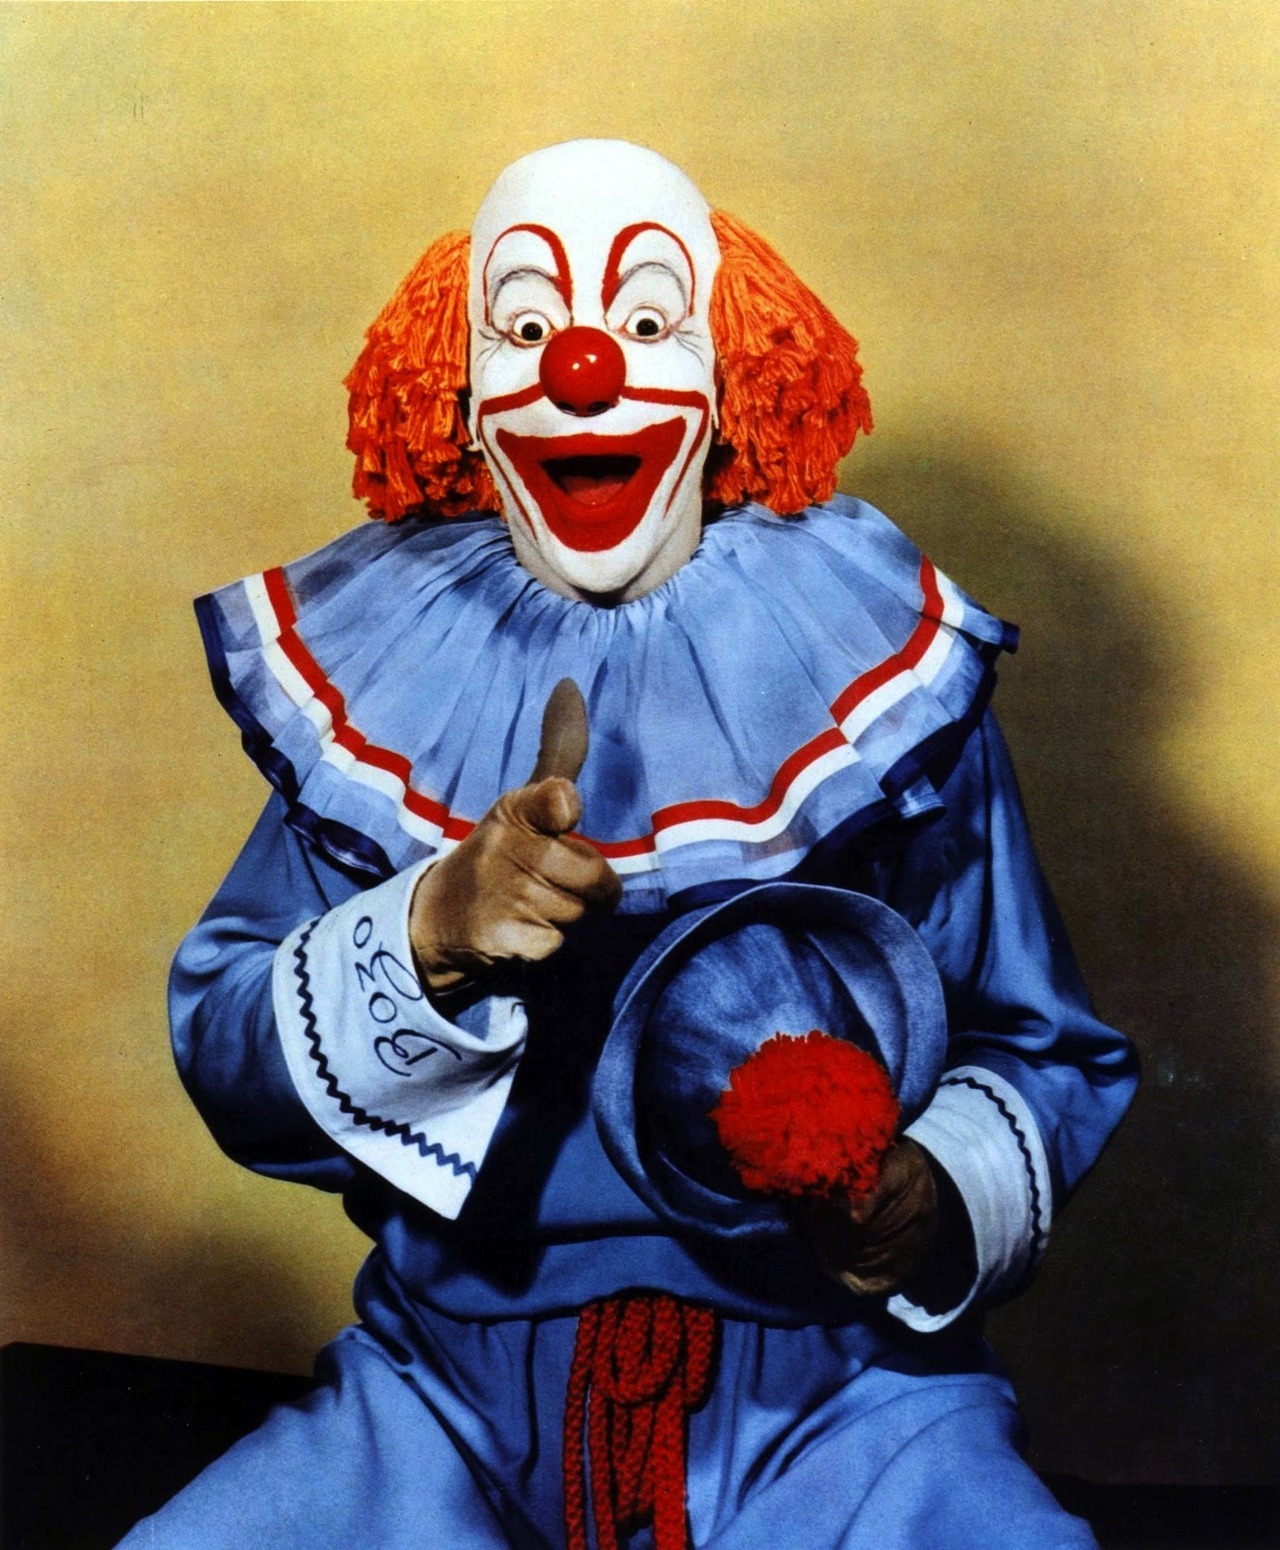 Why is sam so afraid of clowns?